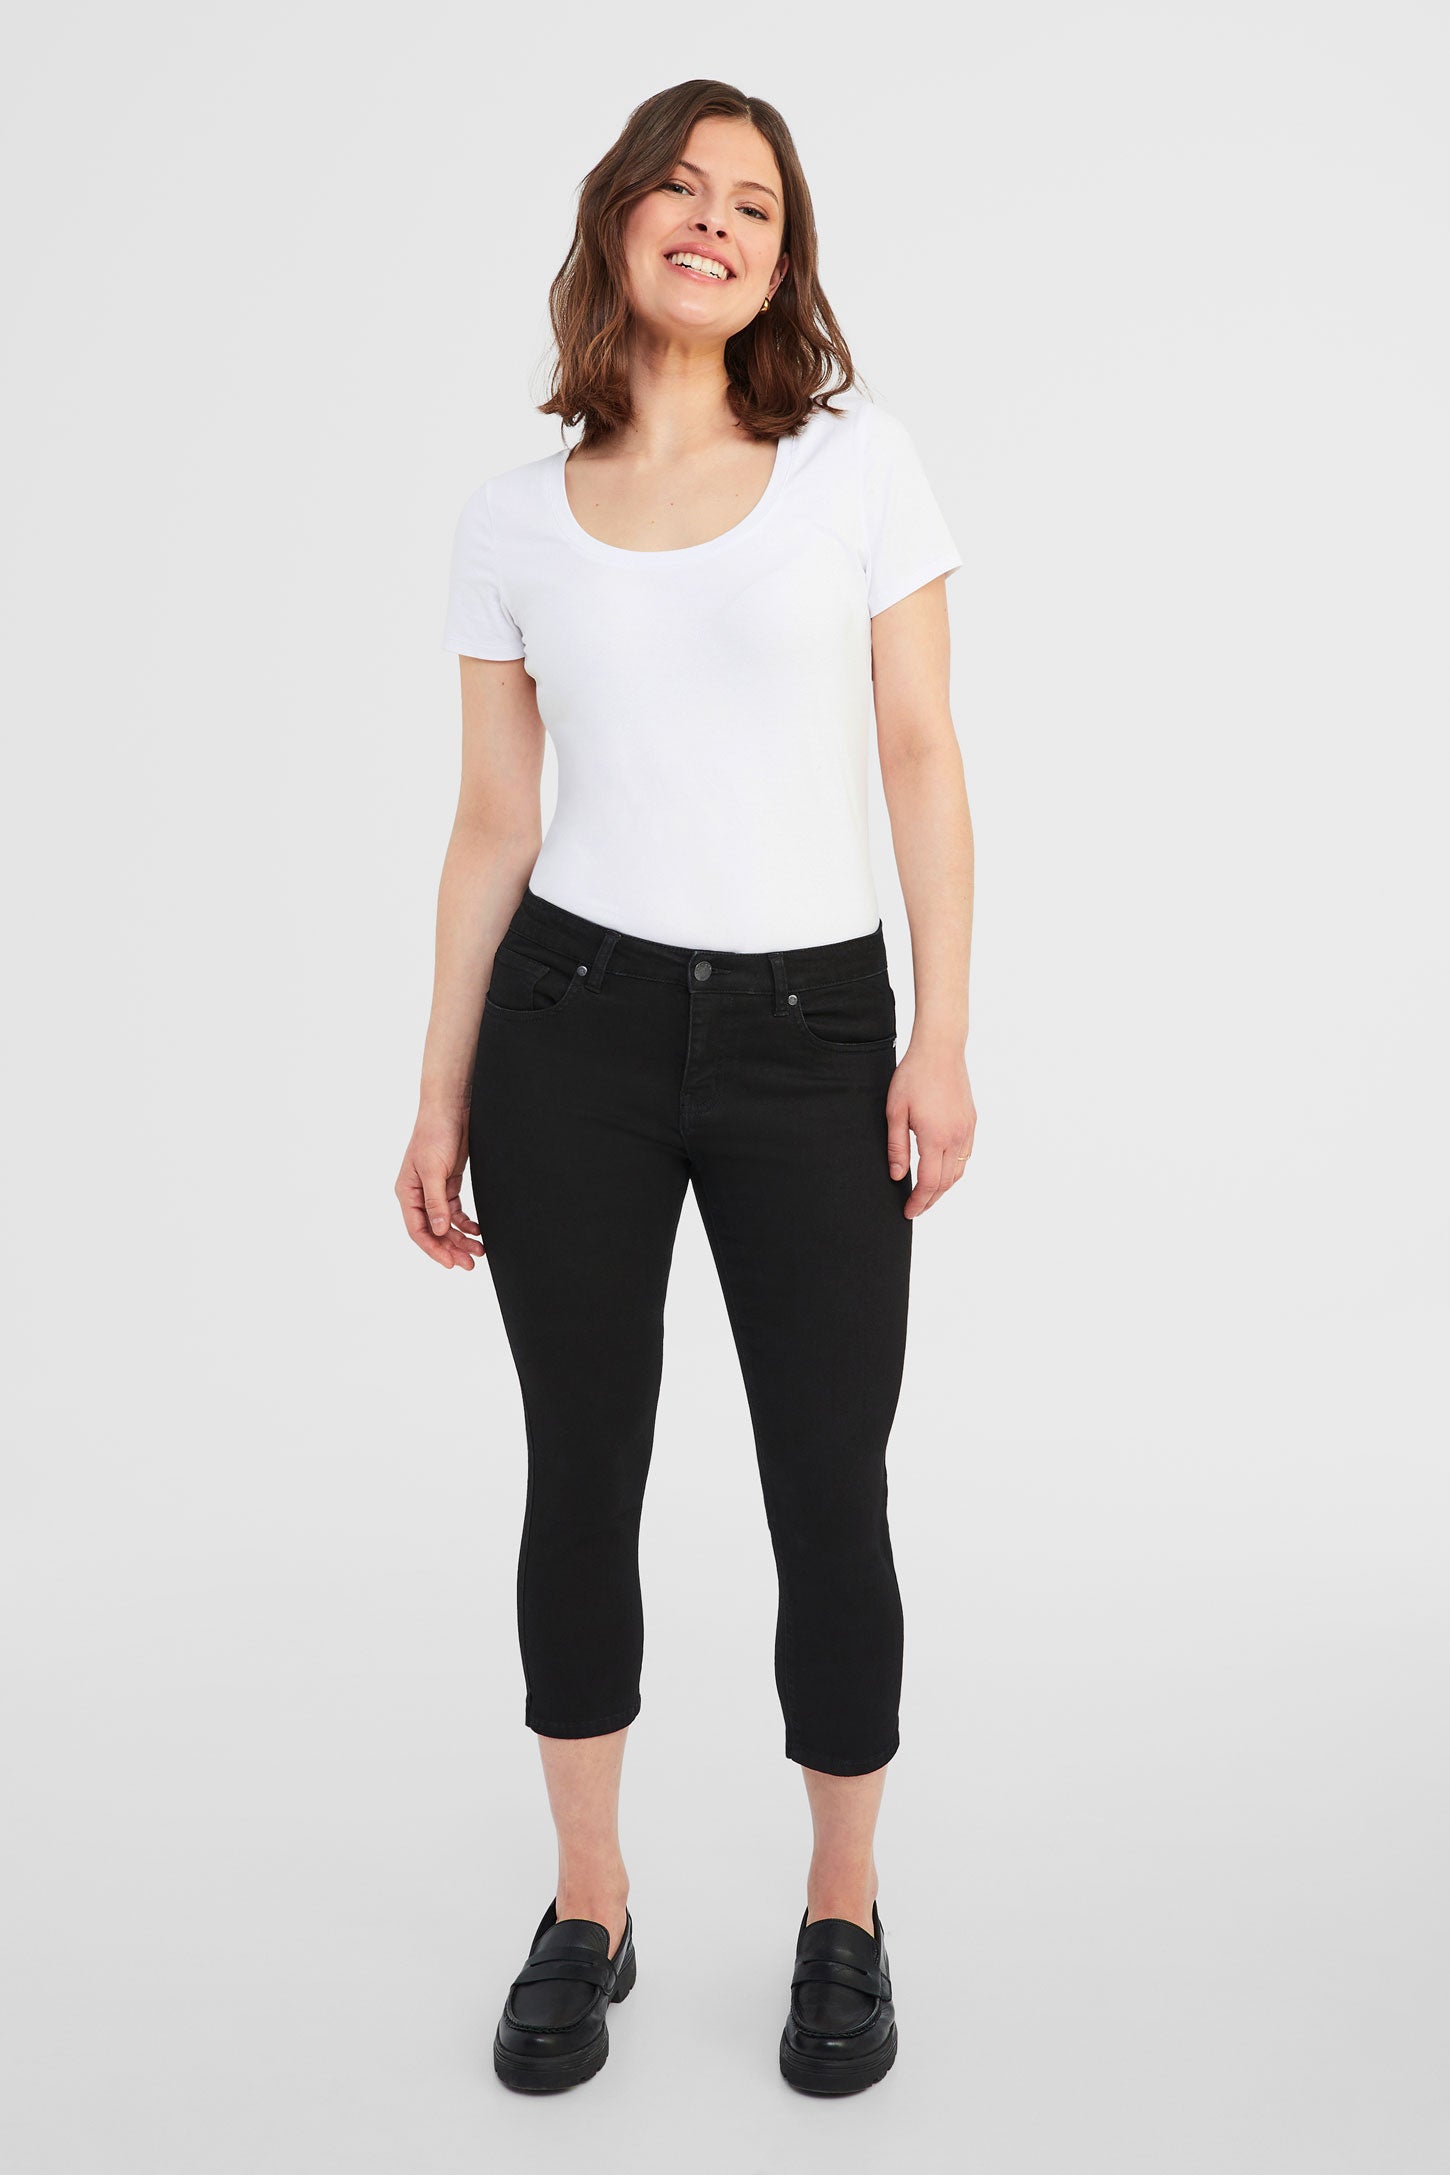 Capri 5 poches en jeans - Femme && NOIR